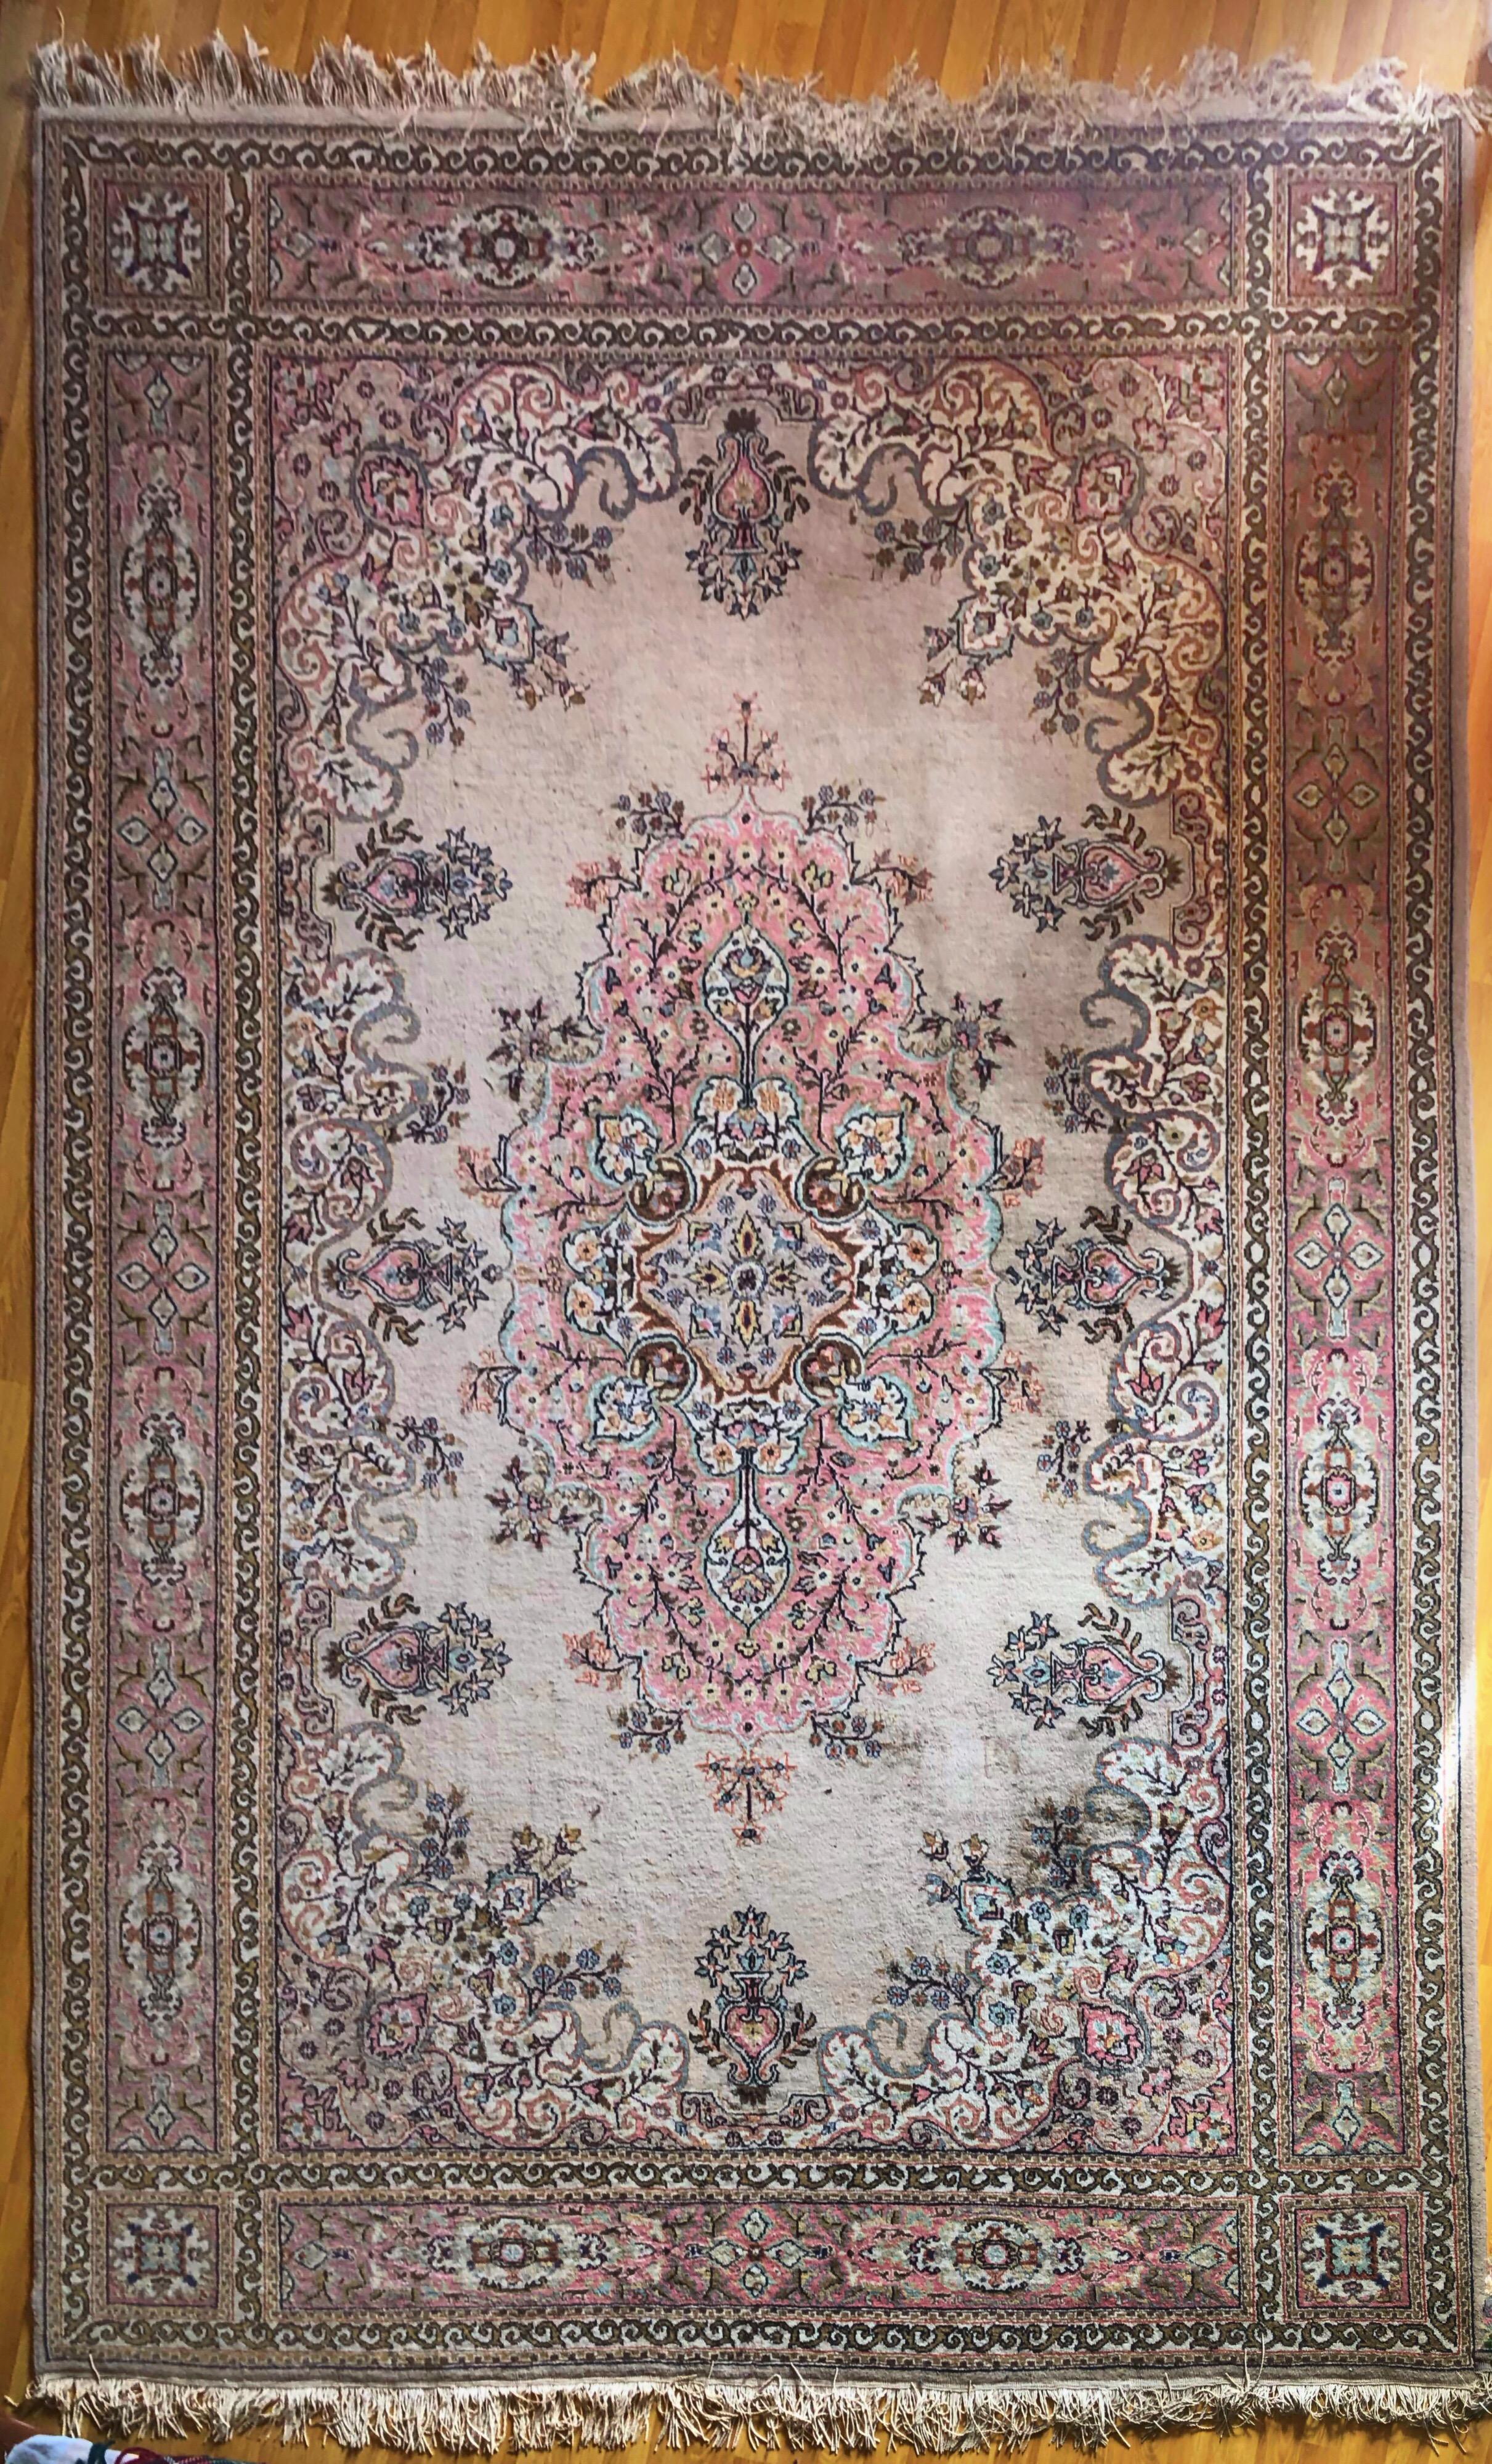 Turkish Large Carpet Kilim Pink Blue Floral Motives Elegant Asian Design SALE  4